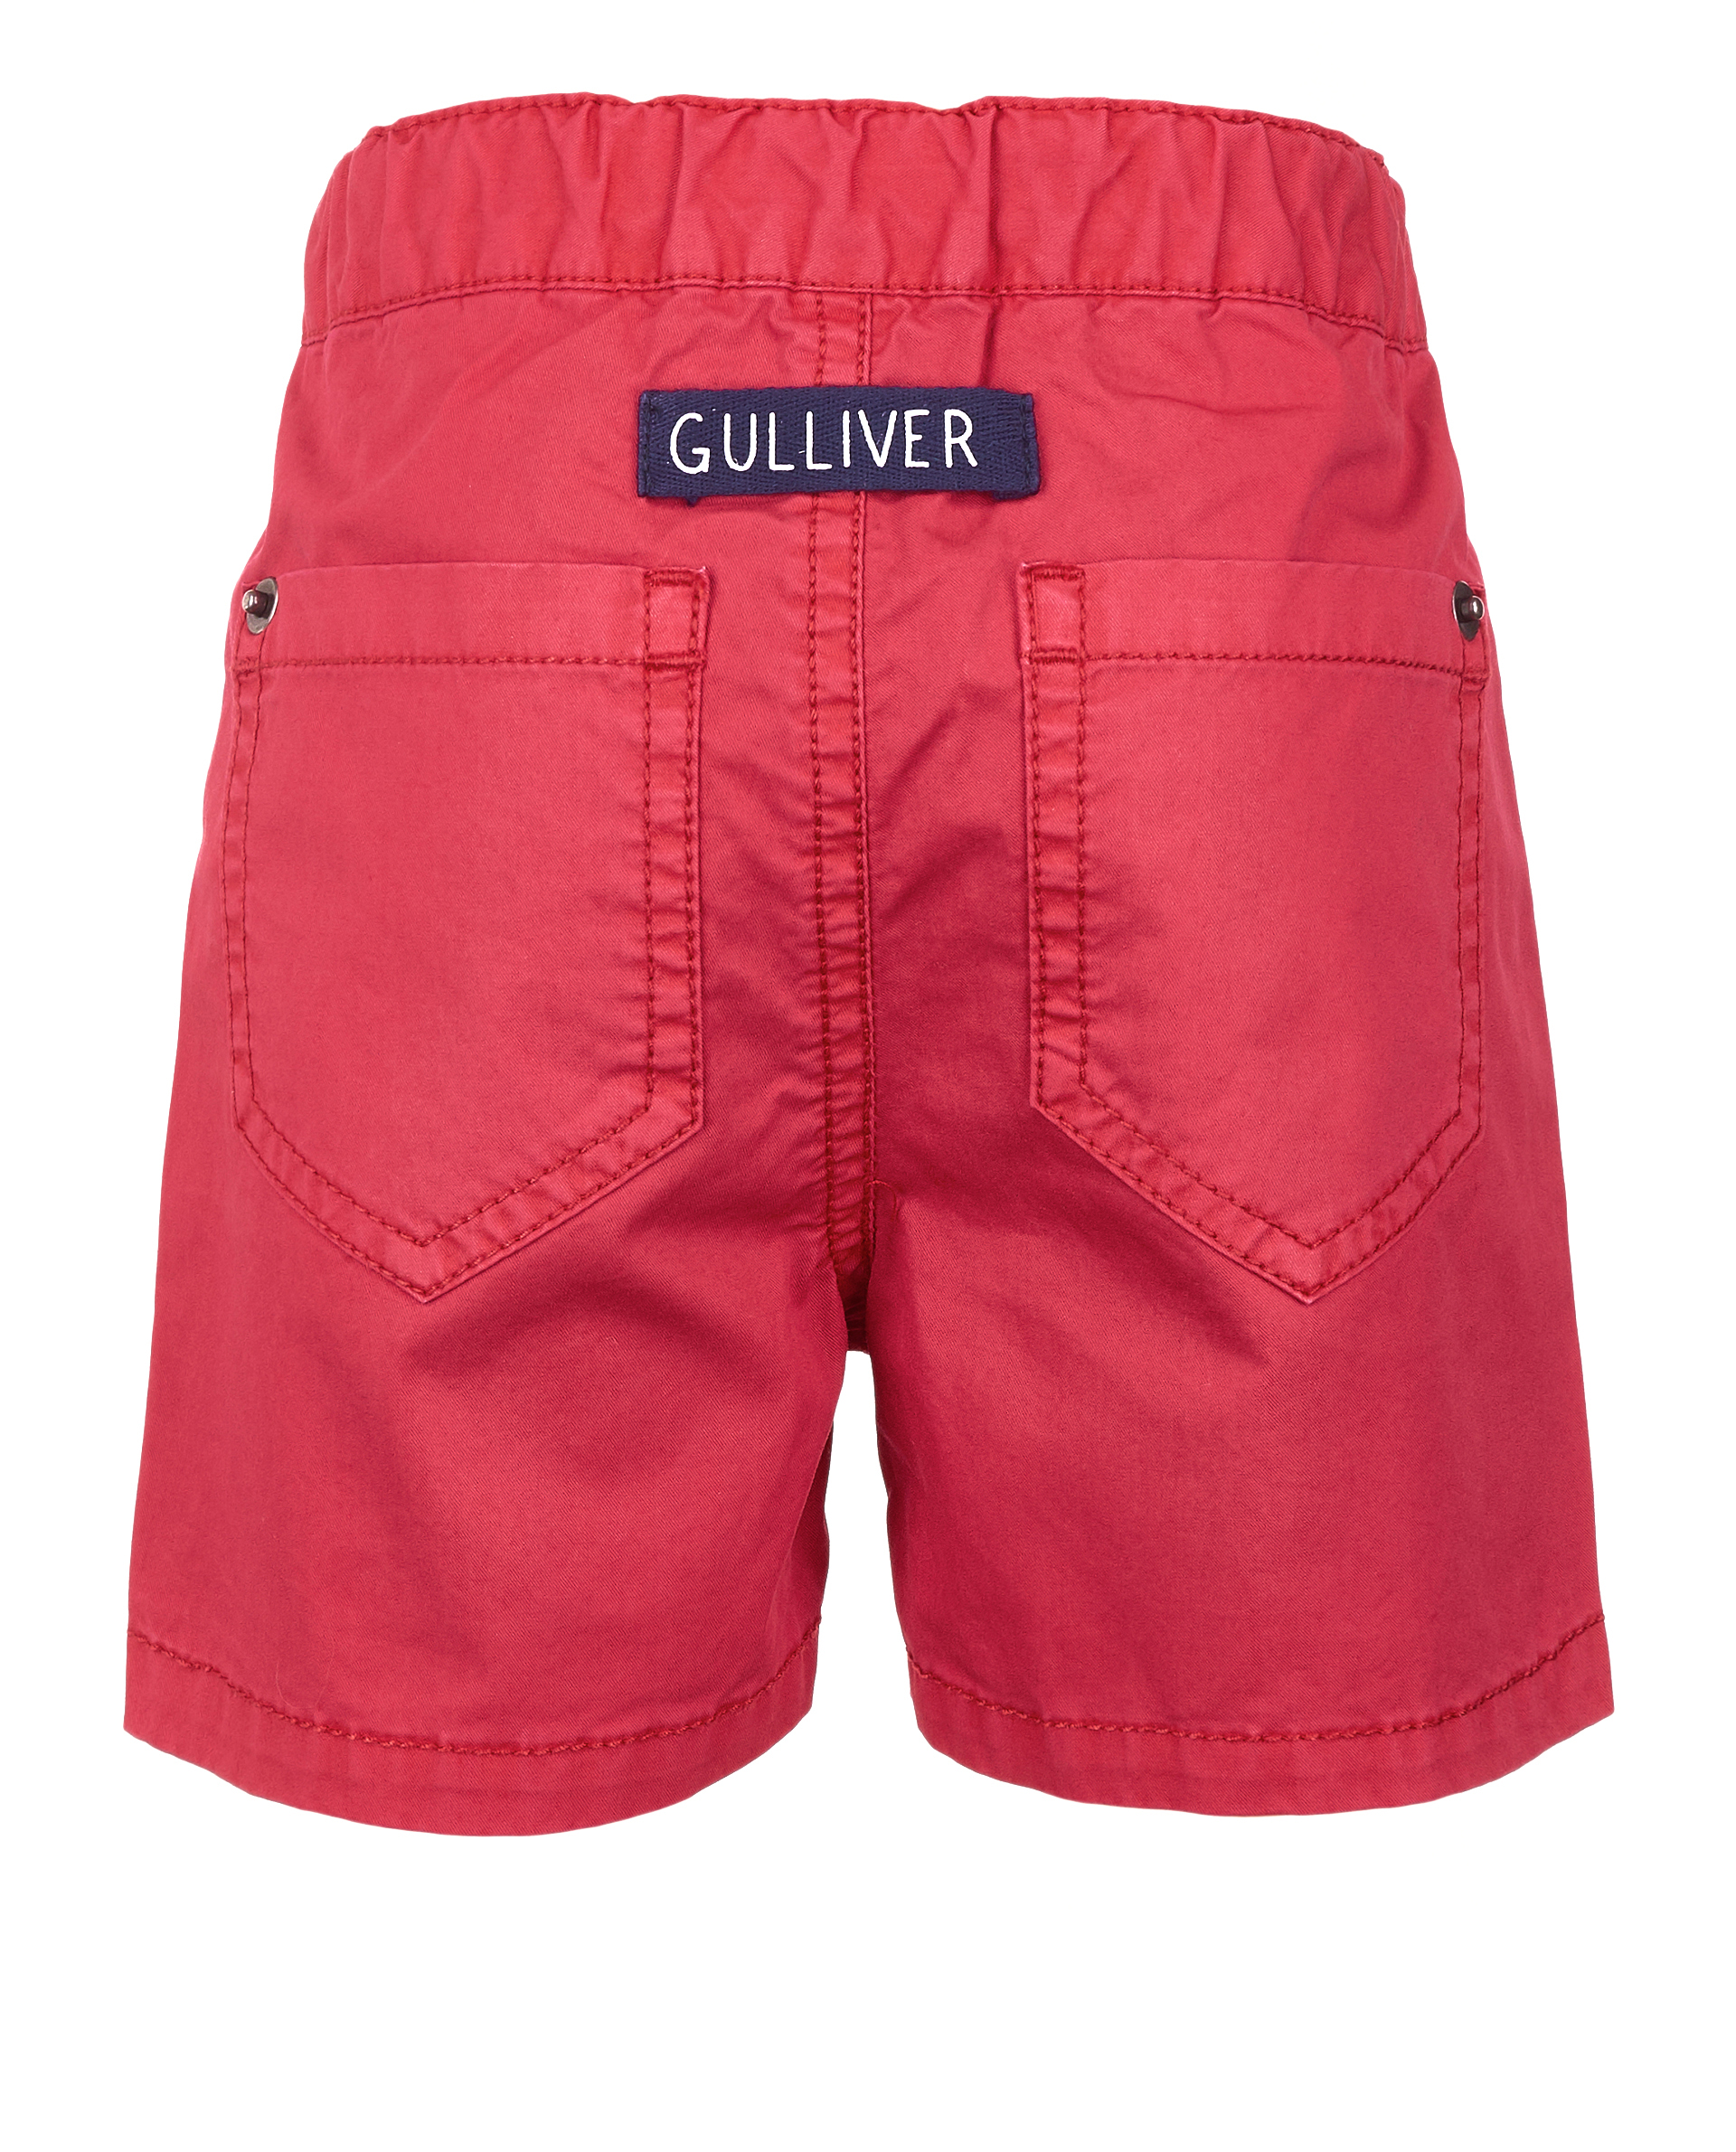 Красные шорты Gulliver 11934BBC6001, размер 86, цвет красный - фото 2